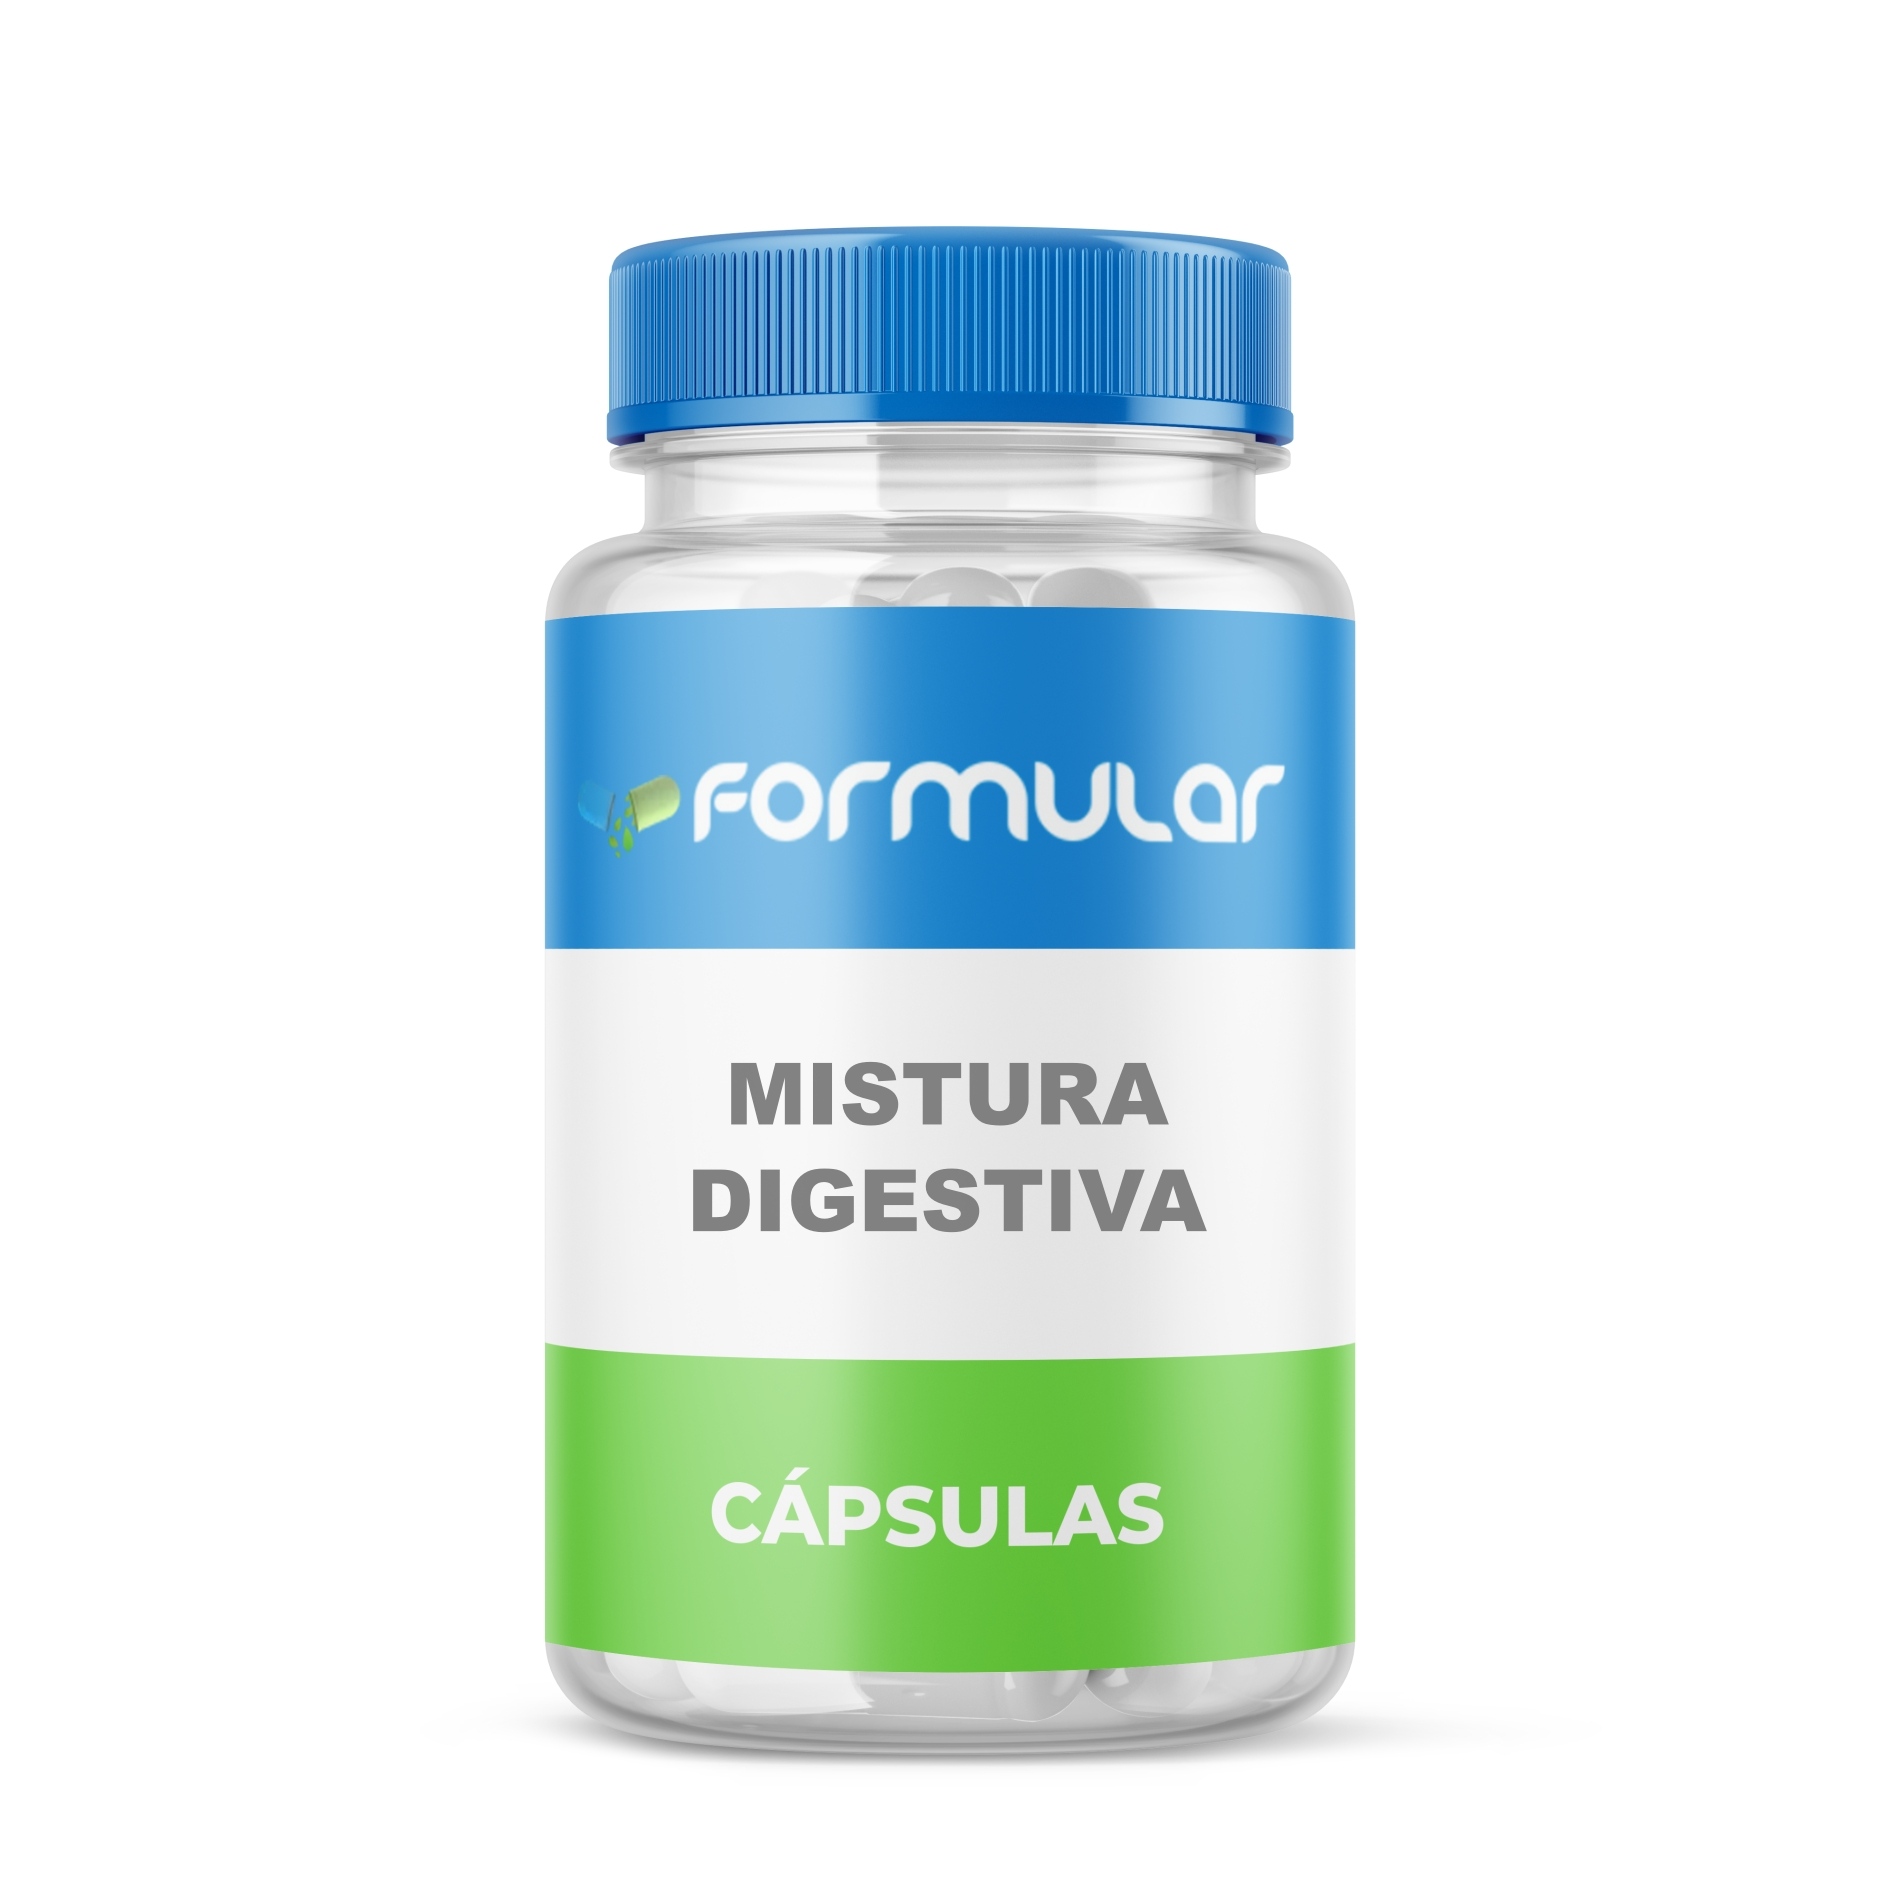 Mistura Digestiva 300mg - Cápsulas - Digestão Saudável